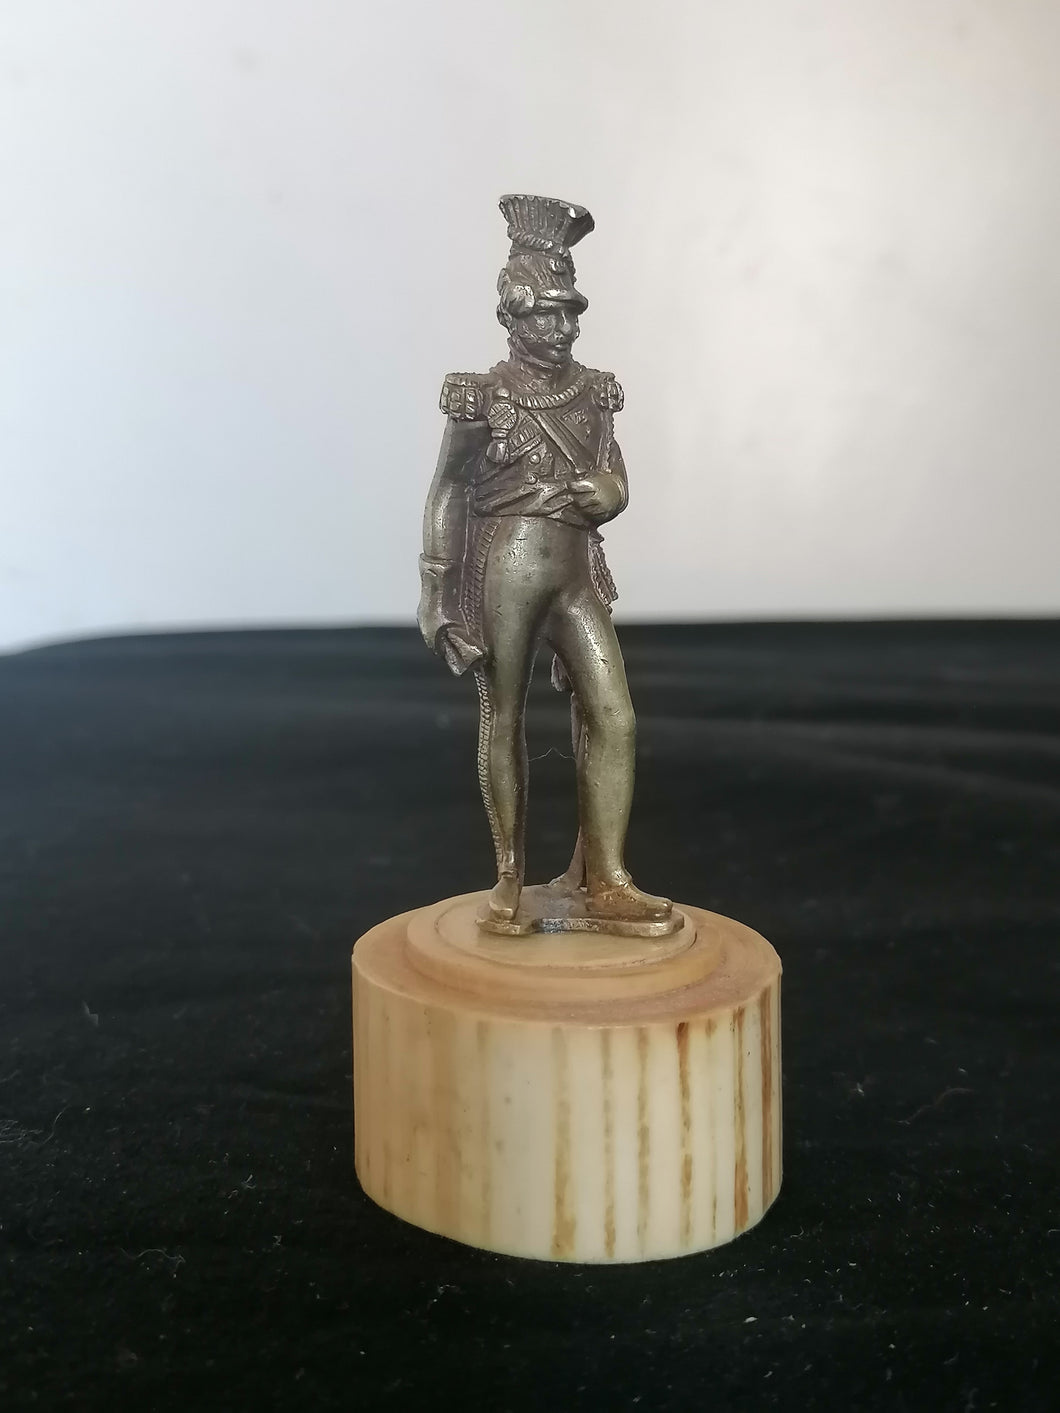 Joseph Antoine Poniatowski Maréchal de France

Figurine en bronze sur socle belle qualité fin XIXe